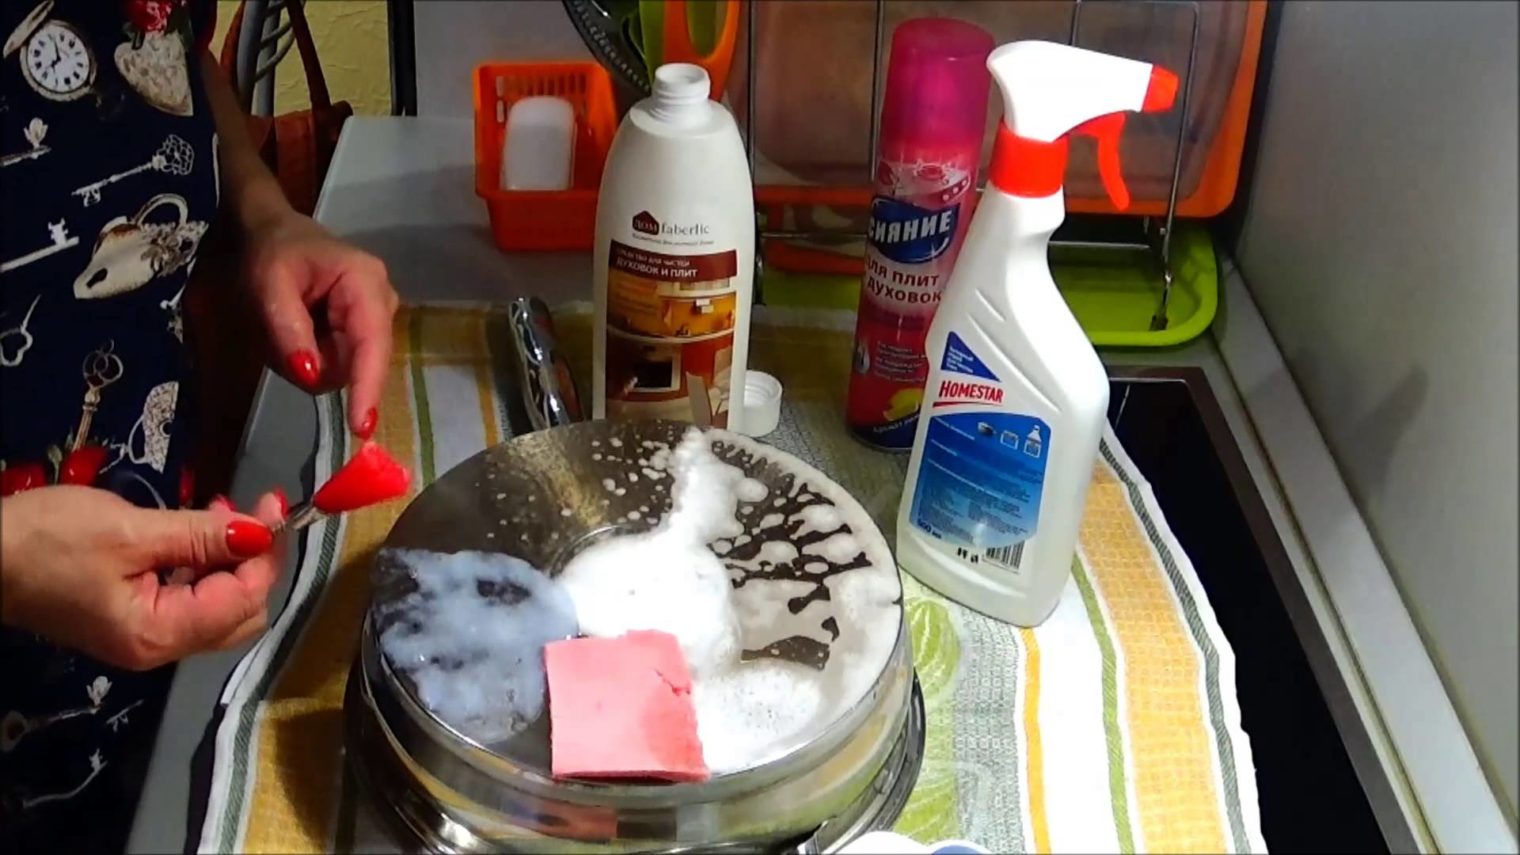 Как очистить алюминиевую посуду